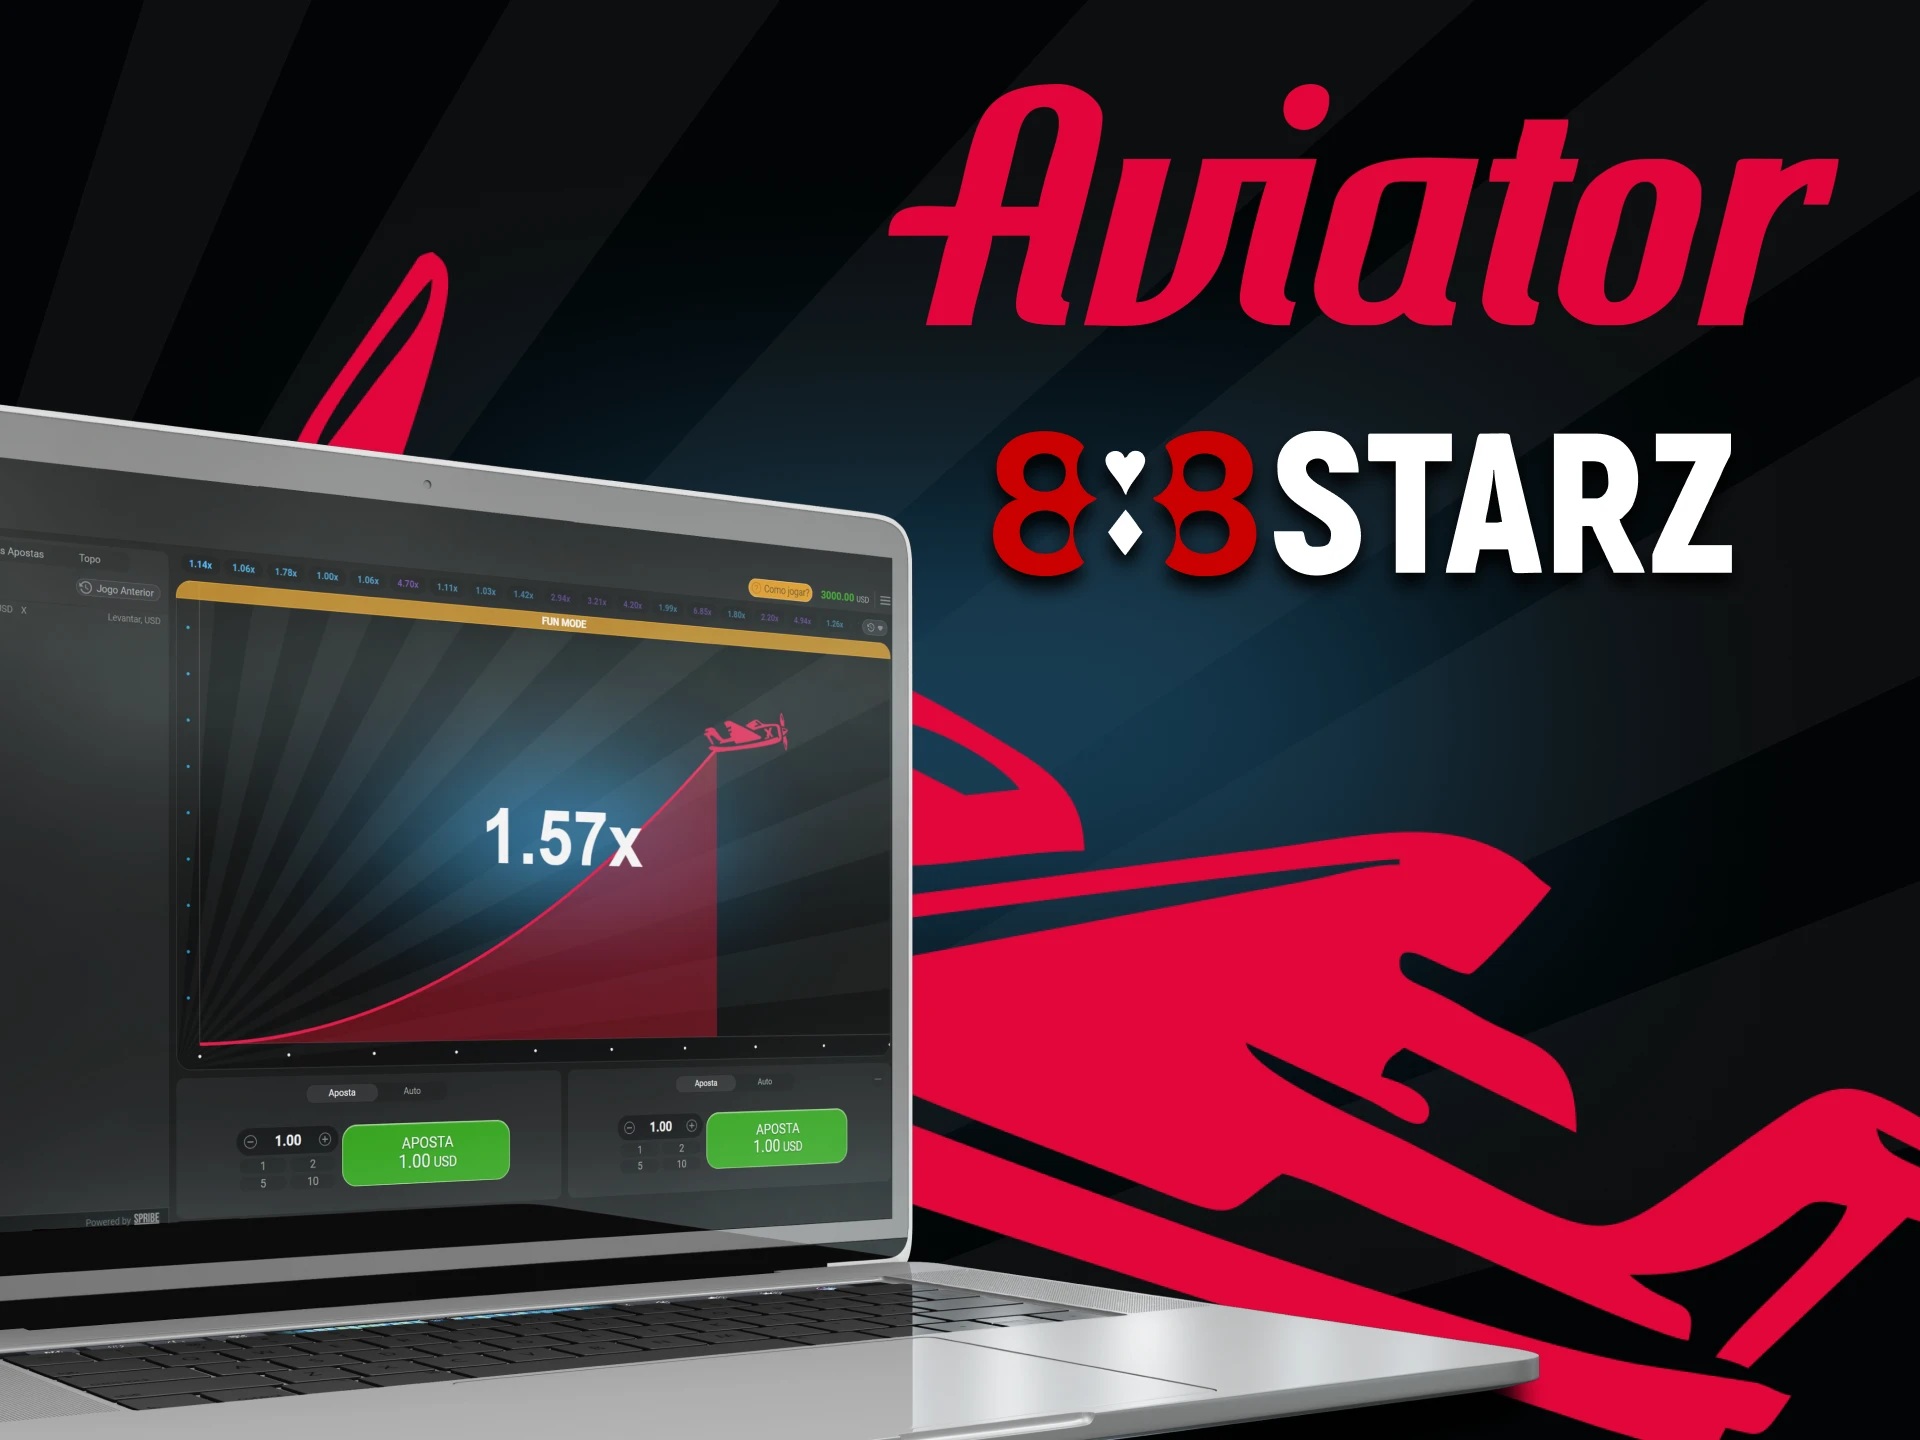 Para jogar Aviator, escolha o serviço 888starz.